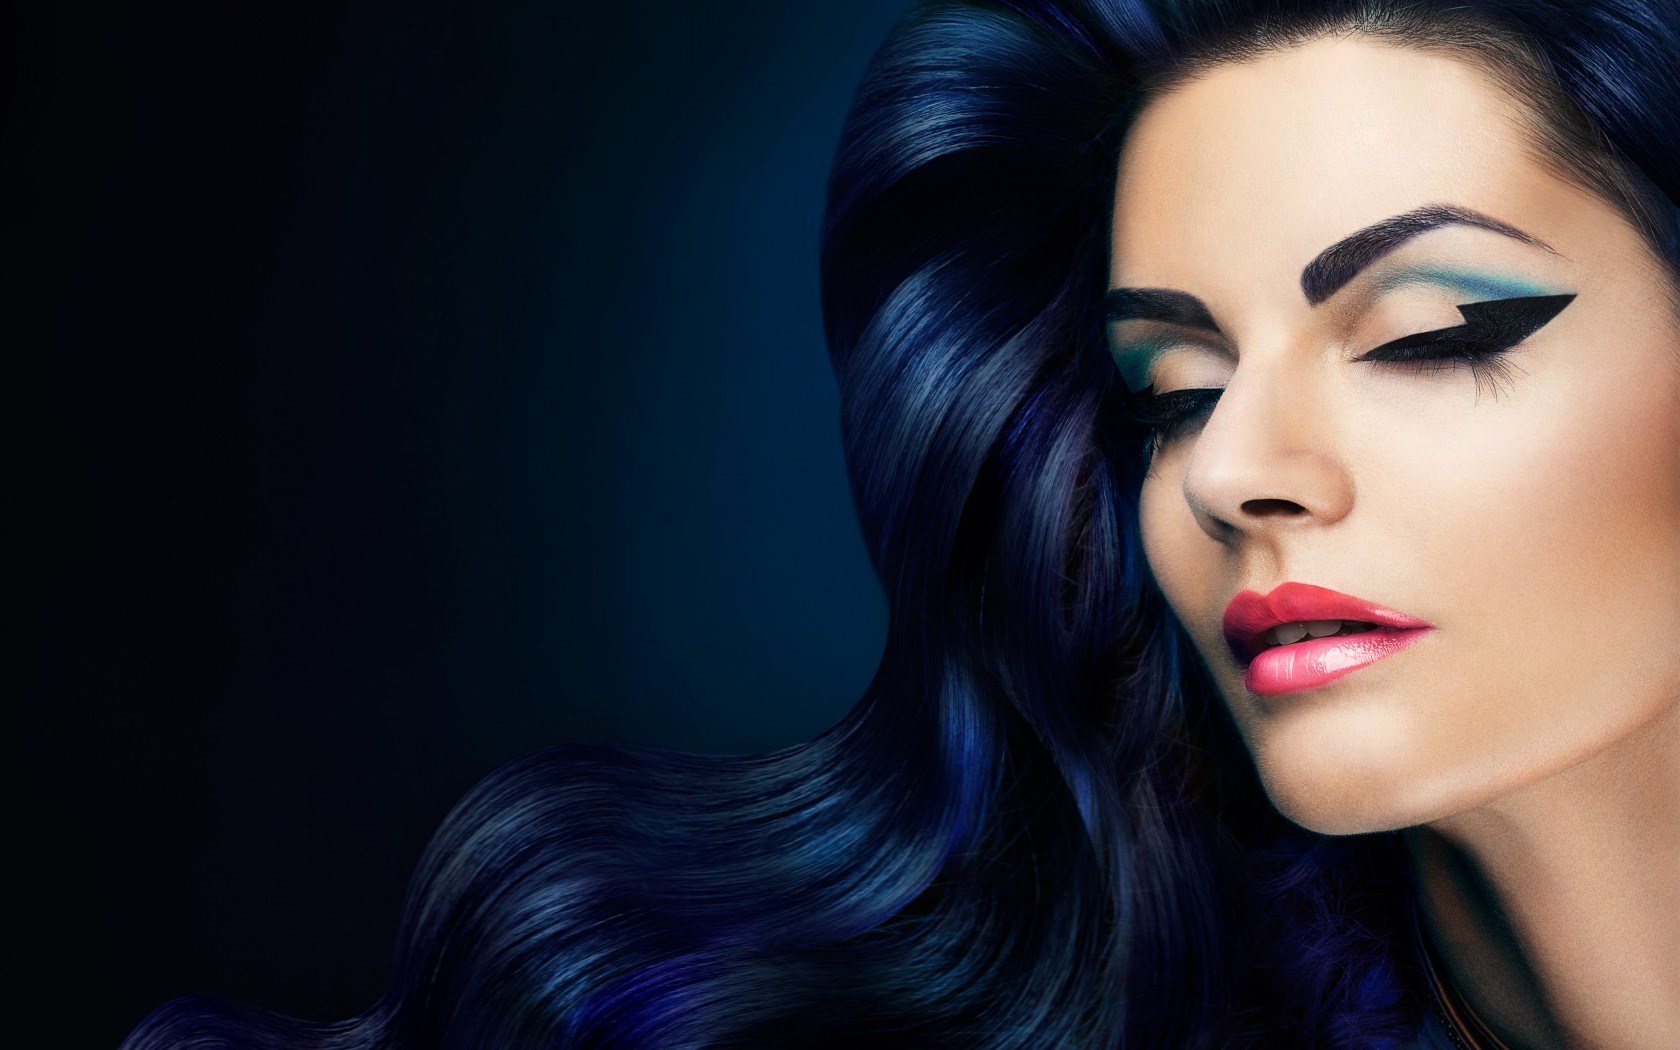 model-make-up-trend-2014-dark-blue-hair-women-ombre-wallpaper.jpg